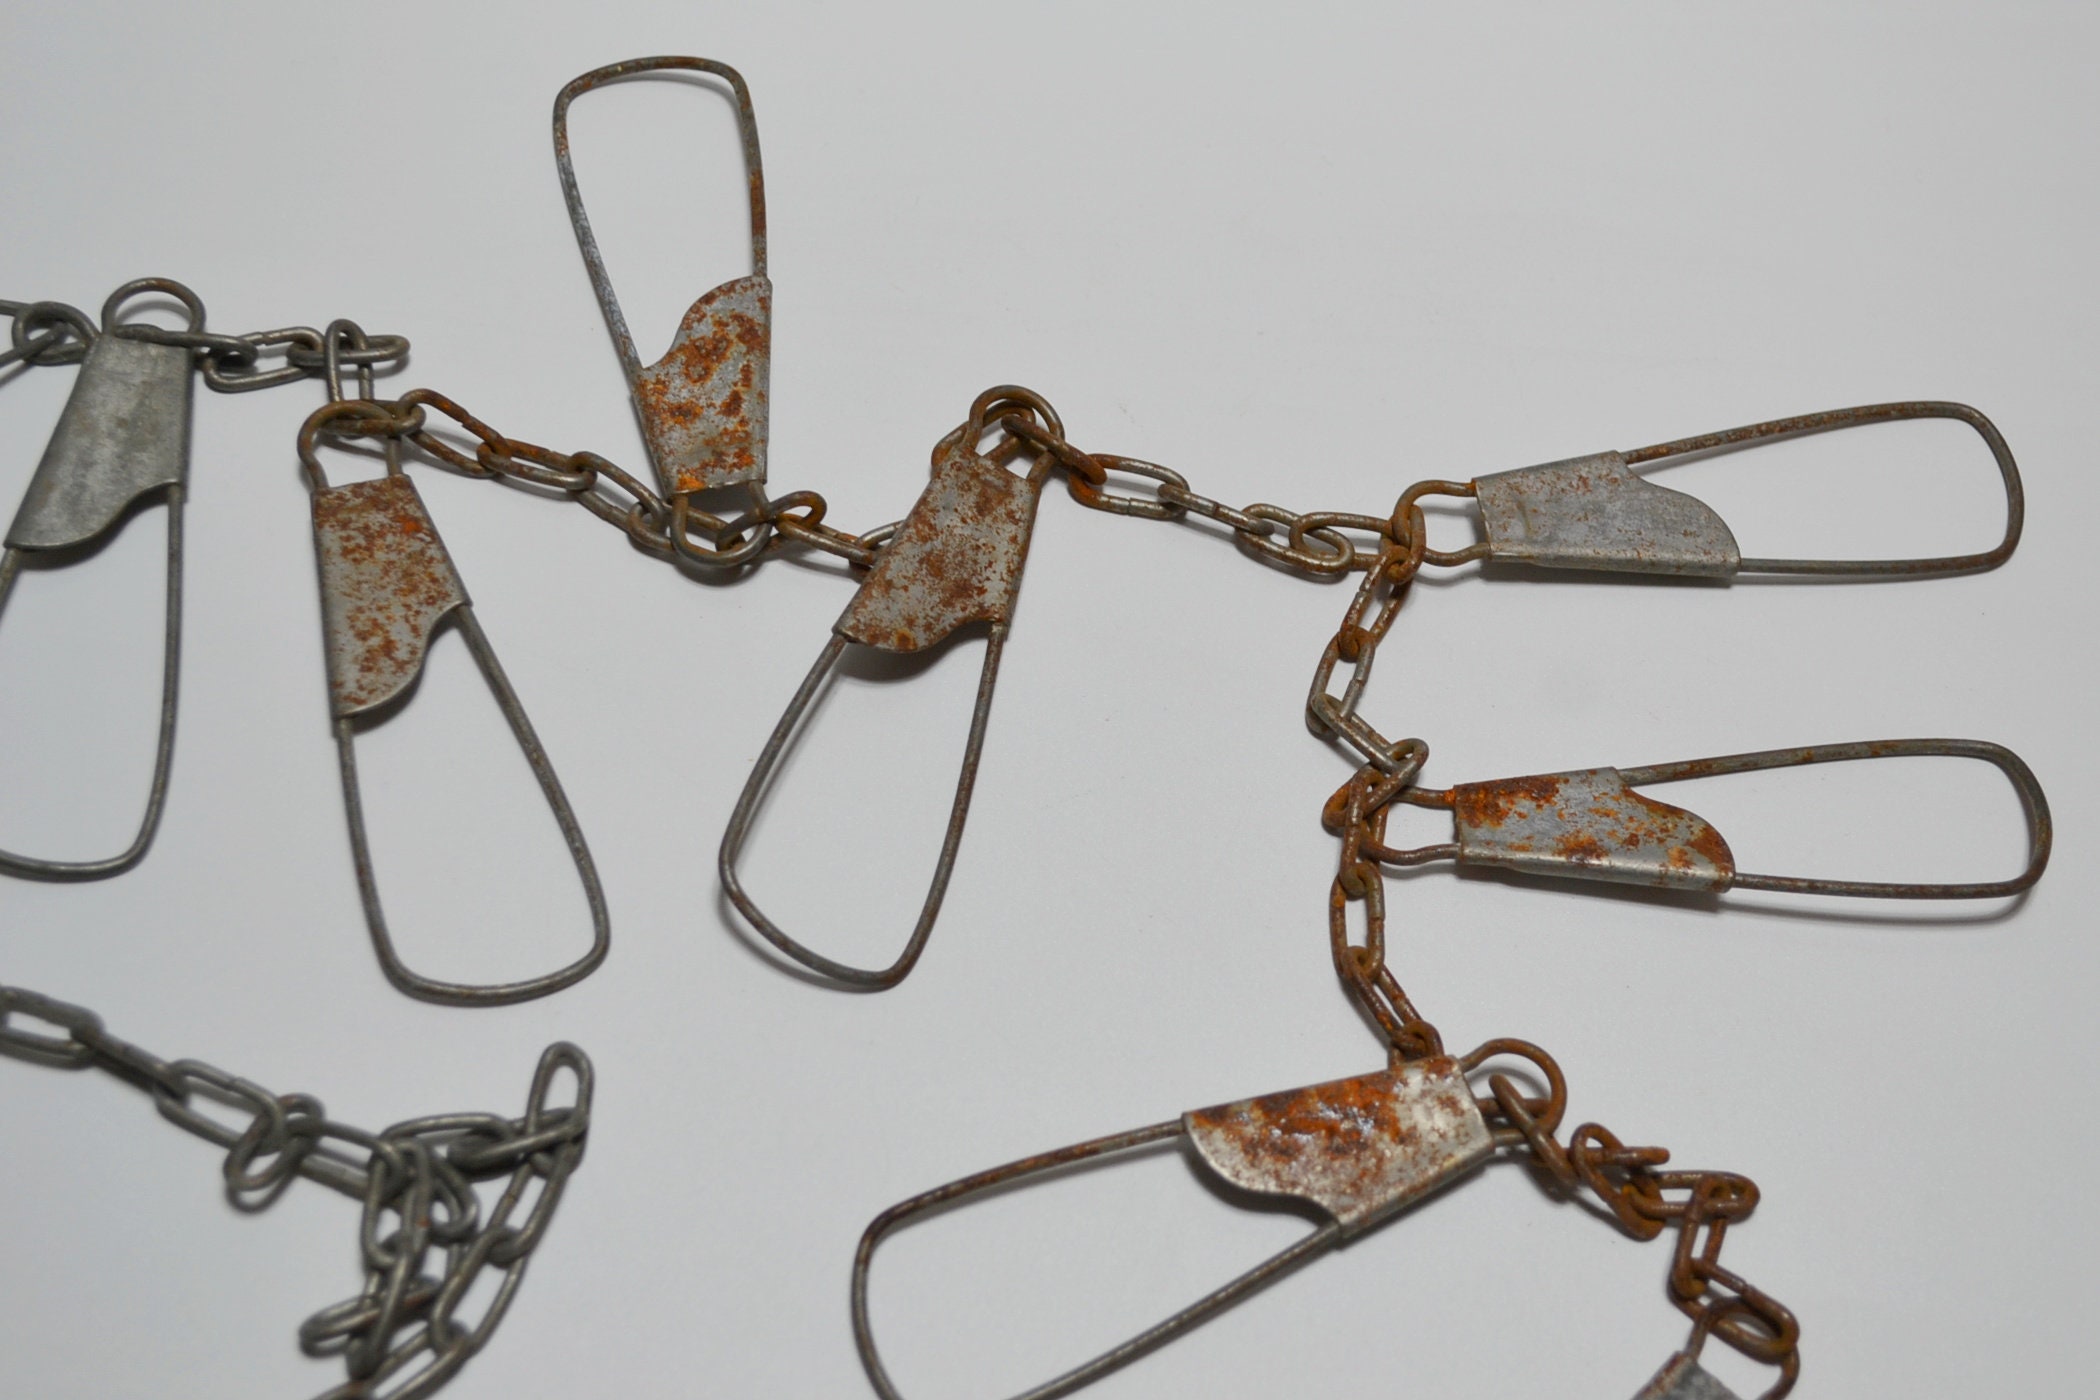 Vintage Rustic Metal Chain Fish Stringer Holder 9 Hooks Old